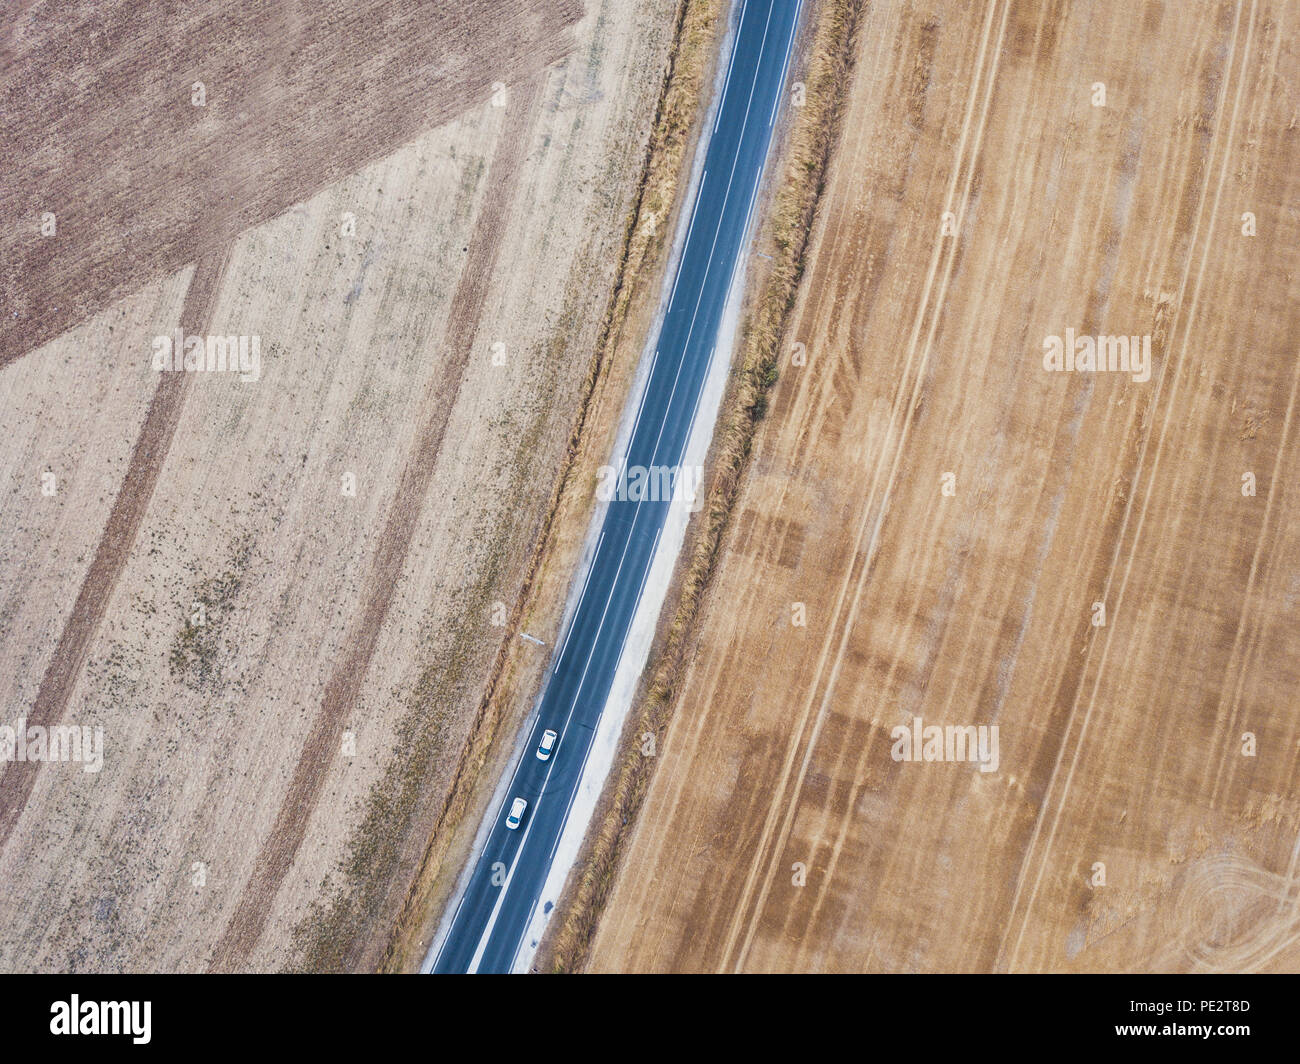 Vista aérea de la carretera asfaltada de drone, de arriba a abajo de dos automóviles circulando, paisaje de geometría Foto de stock